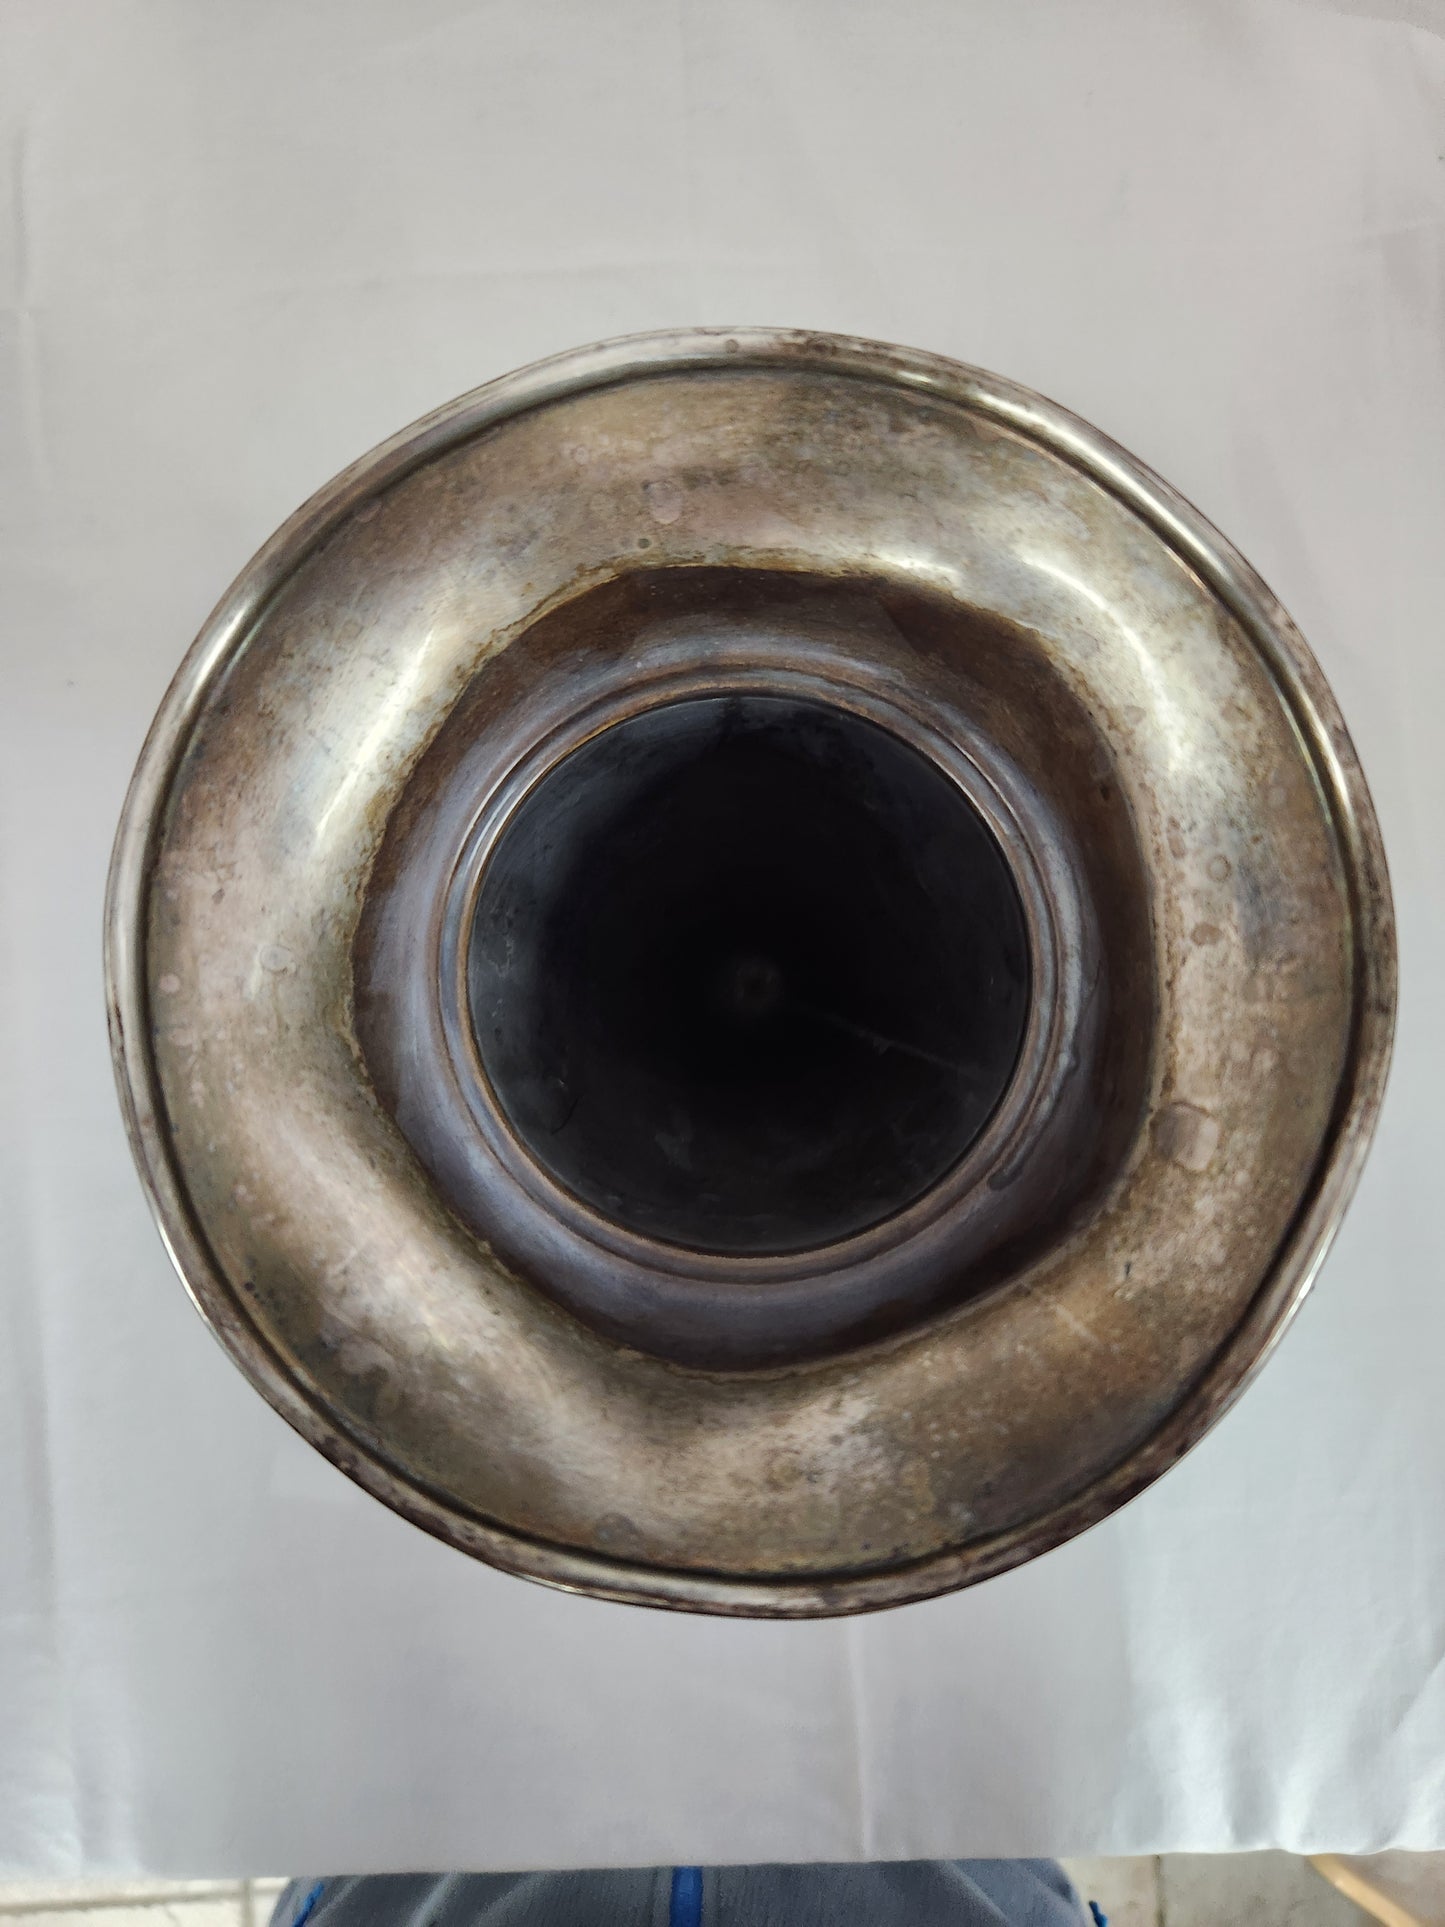 VTG - Sterling 9" Trumpet Vase w/ Lead Filled Base ('B' engraving)